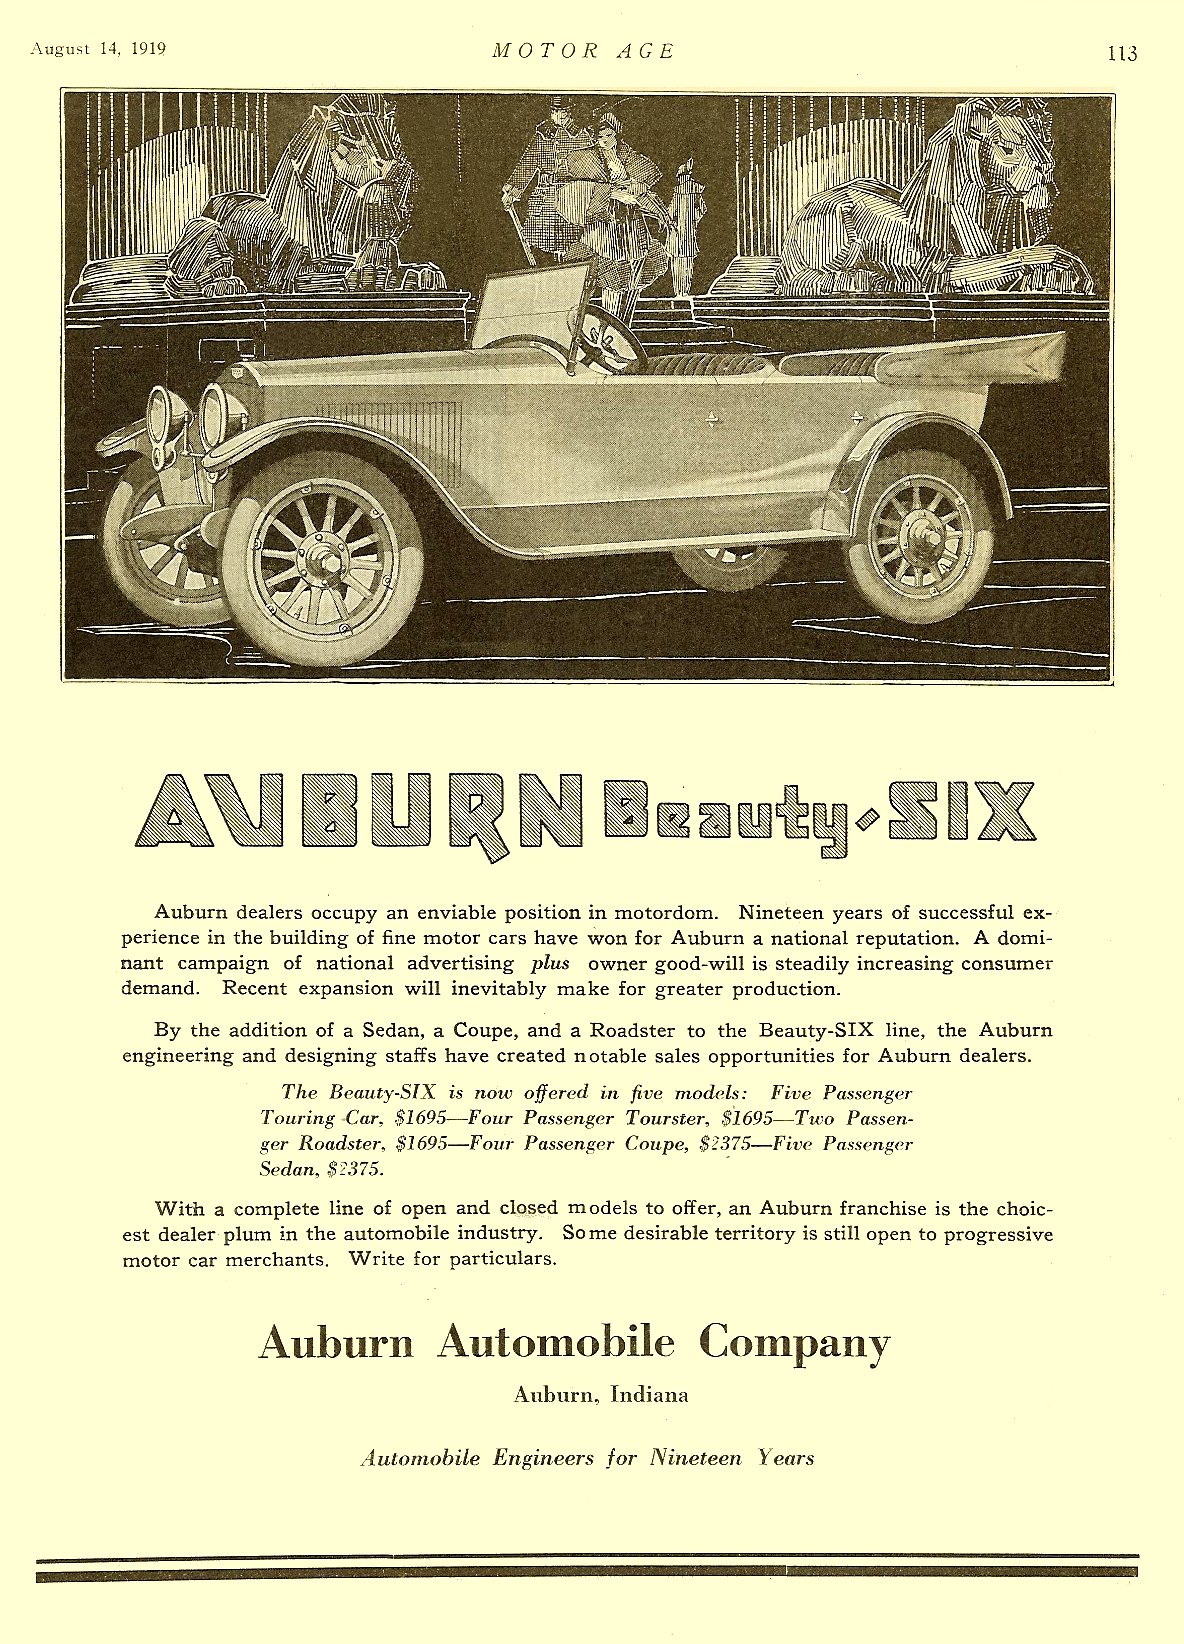 1919 Auburn Auto Advertising